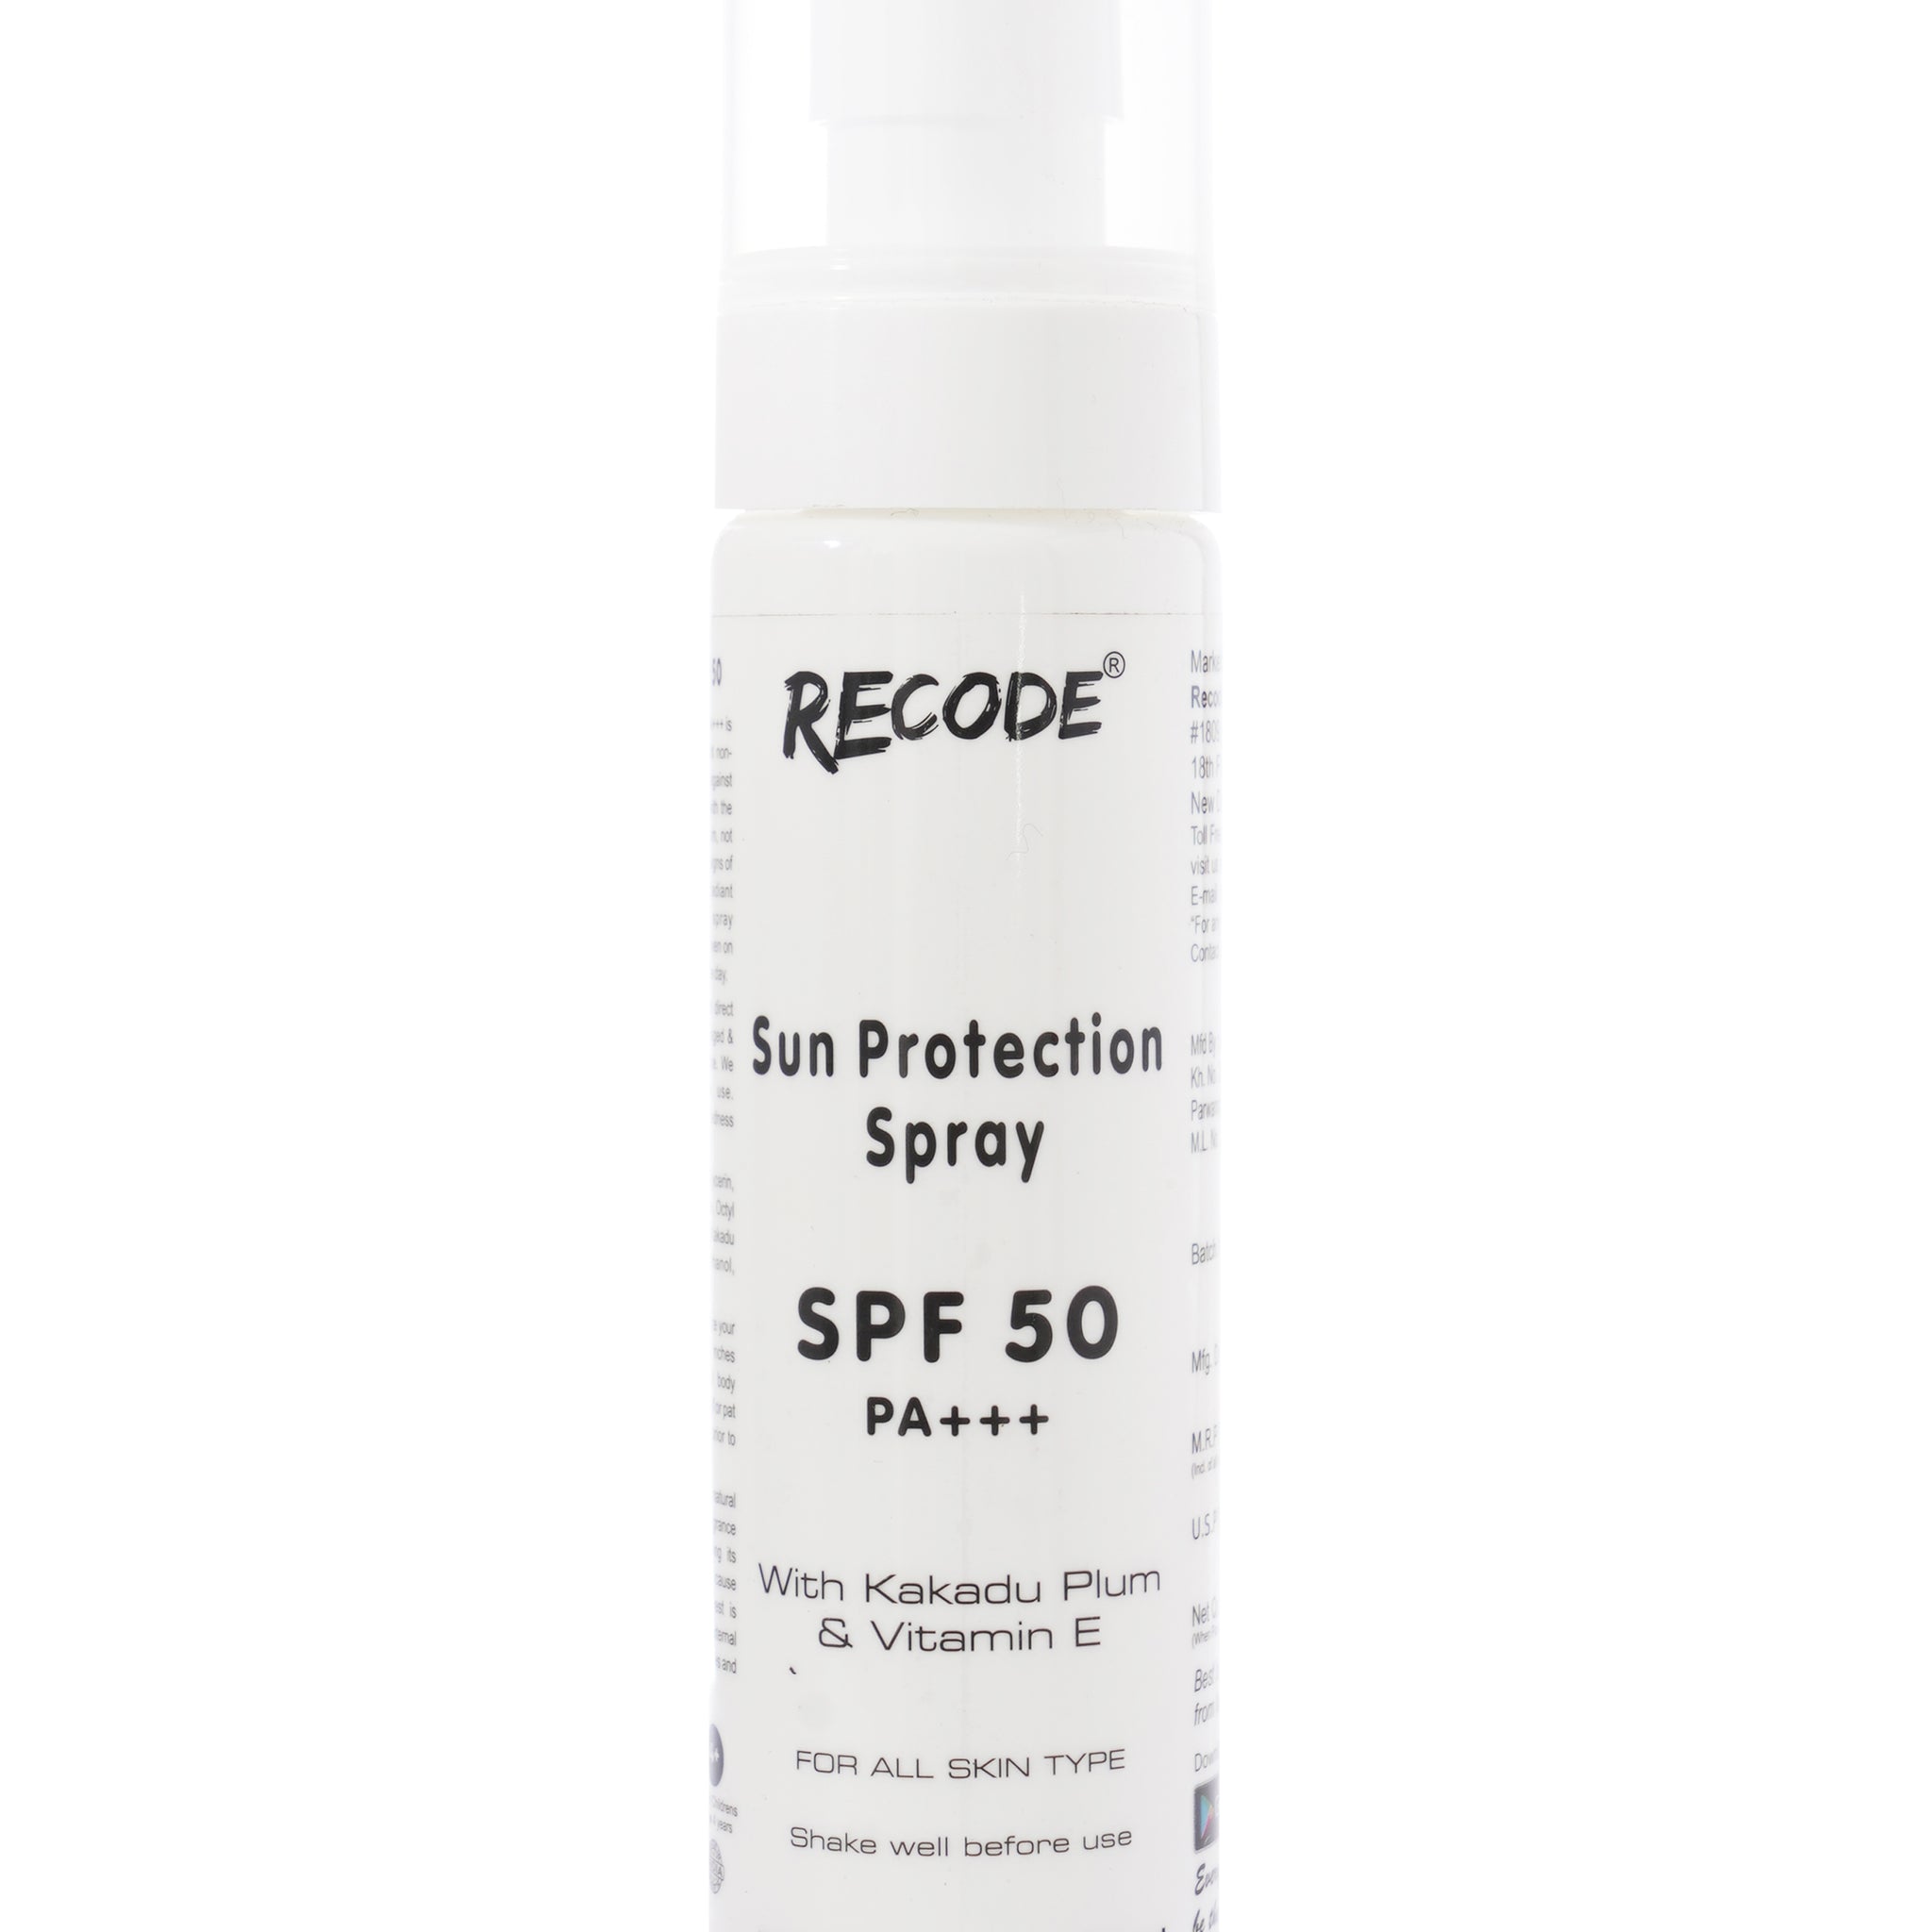 Spf 50 Pa+++ Sun Protection Sunscreen Face Spray with Vitamin E